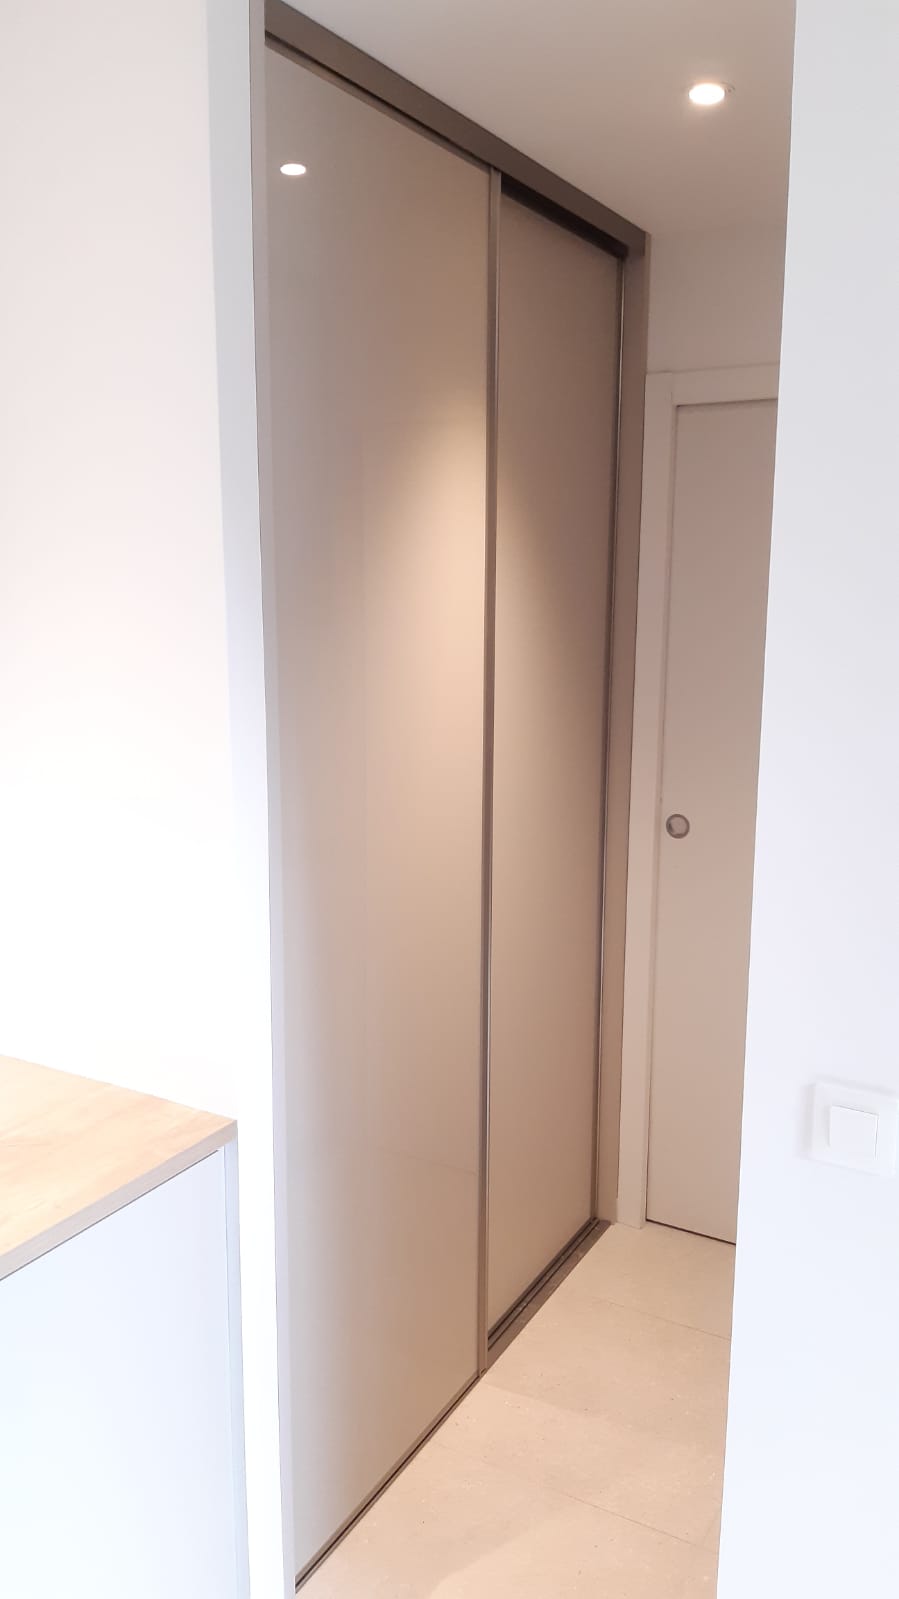 Voici une armoire avec les portes fermées.